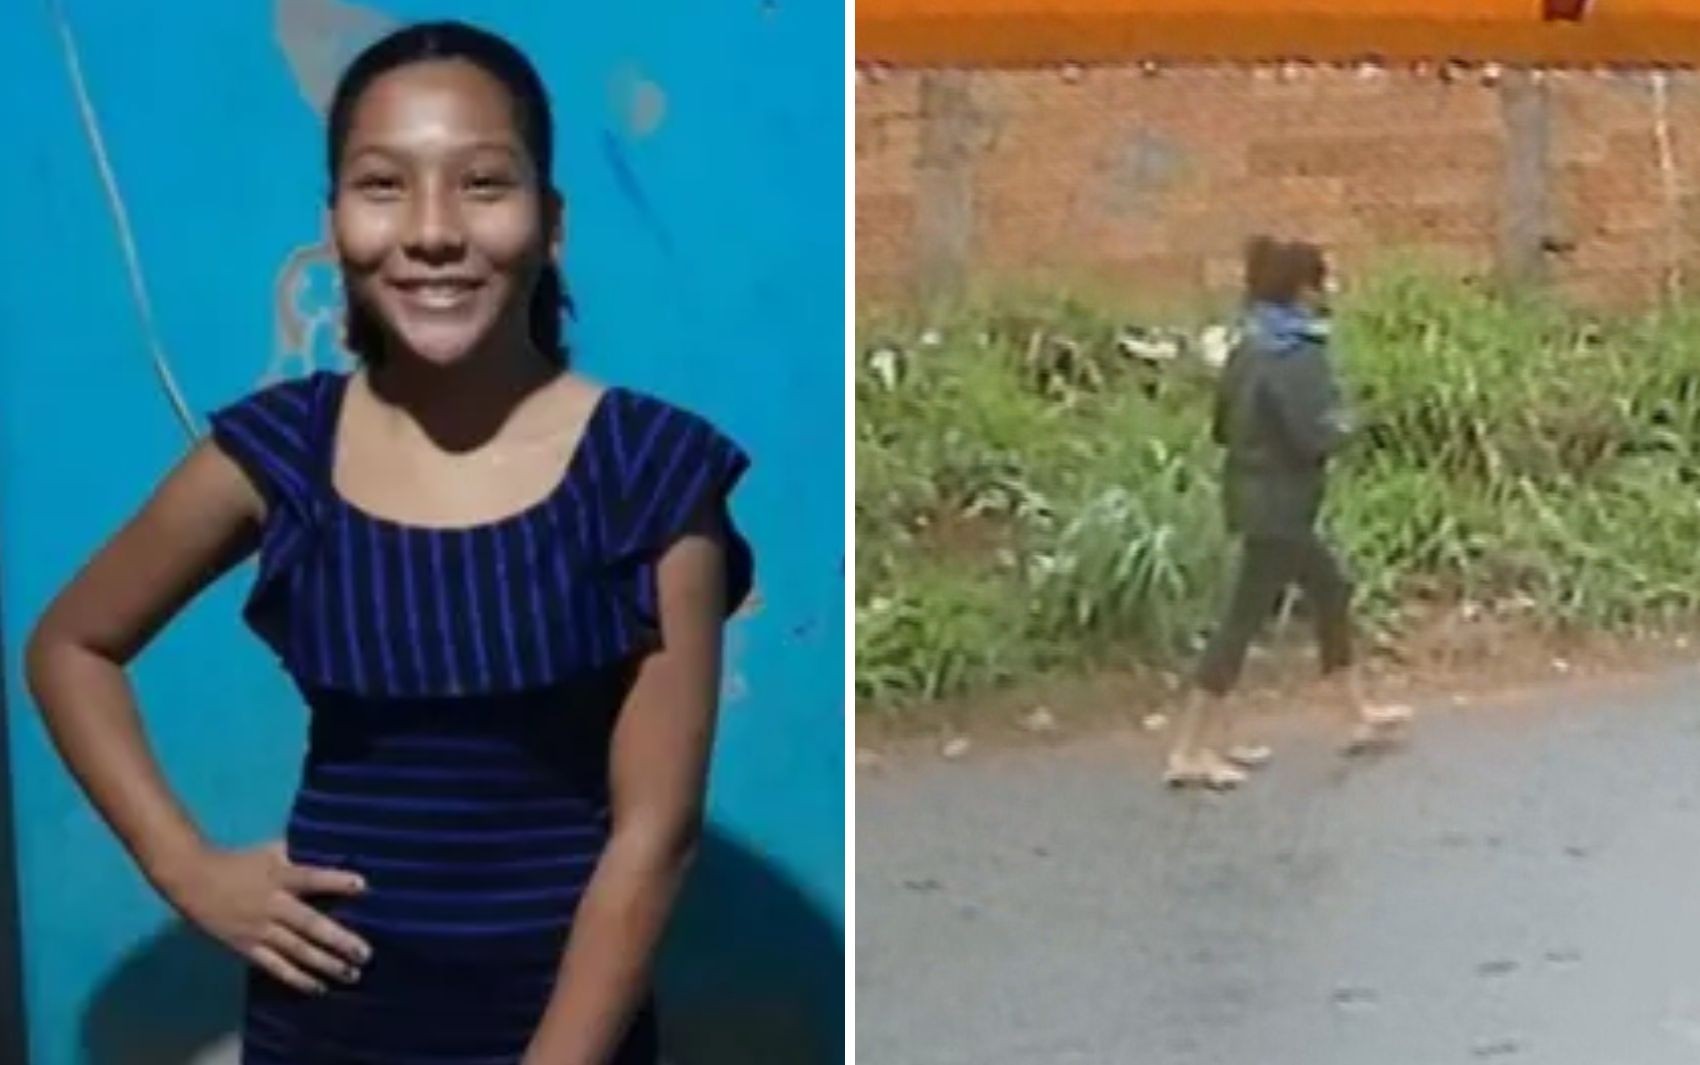 Caso Amélia Vitória: Enteada de suspeito de matar estudante adolescente de 14 anos denunciou à polícia que foi estuprada cinco vezes por ele